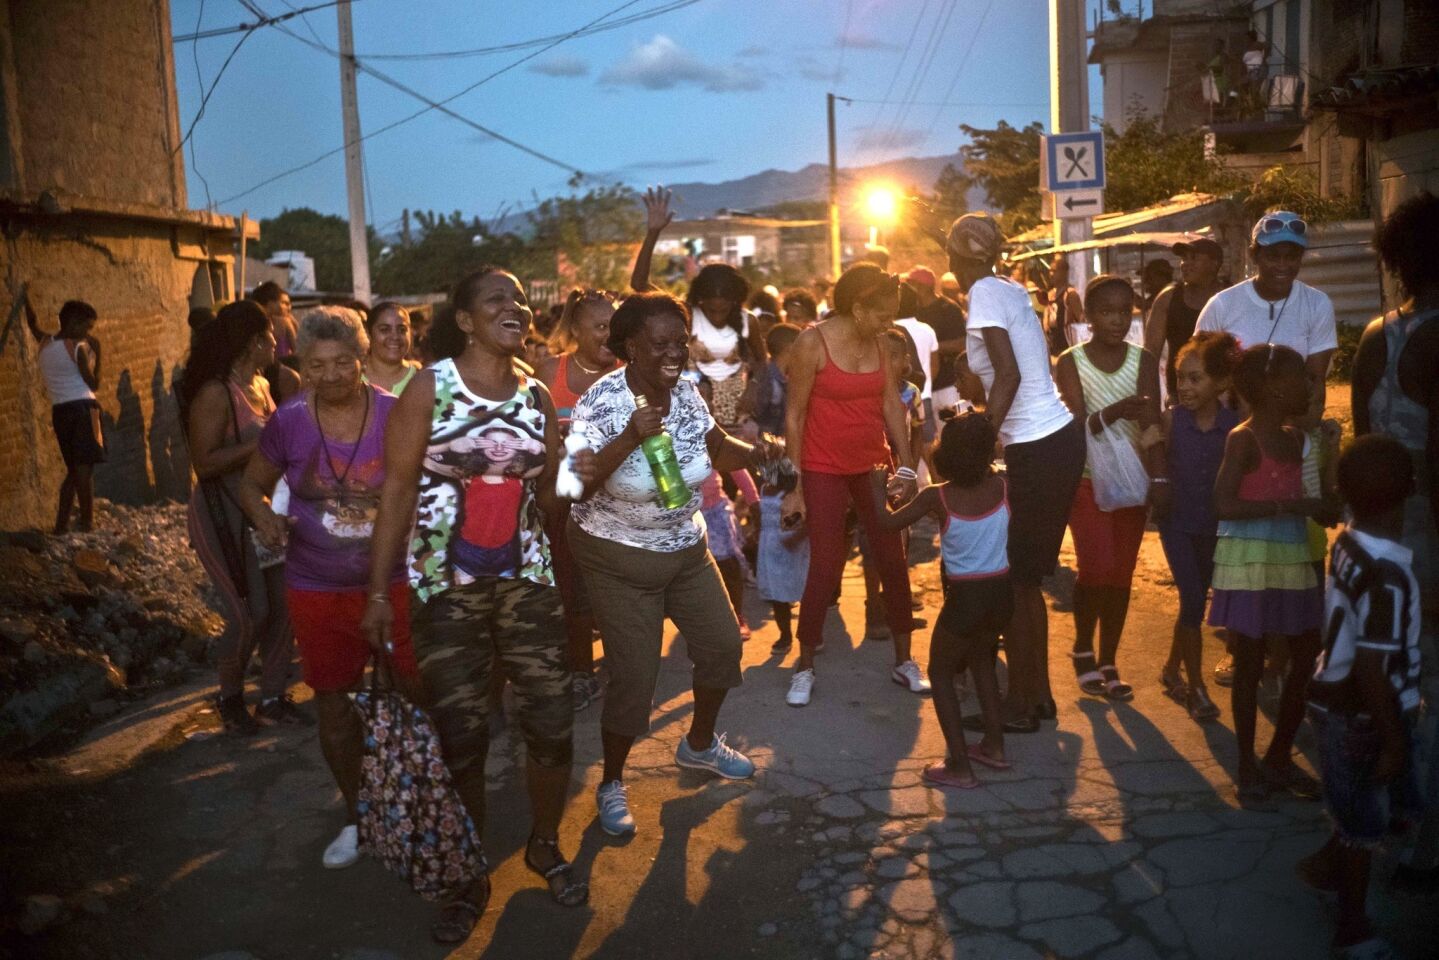 Vecinos bailan en la inauguración de una competición de lucha de nivel aficionado de una semana de duración organizada por vecinos del barrio de Chicharrones, en Santiago, Cuba.